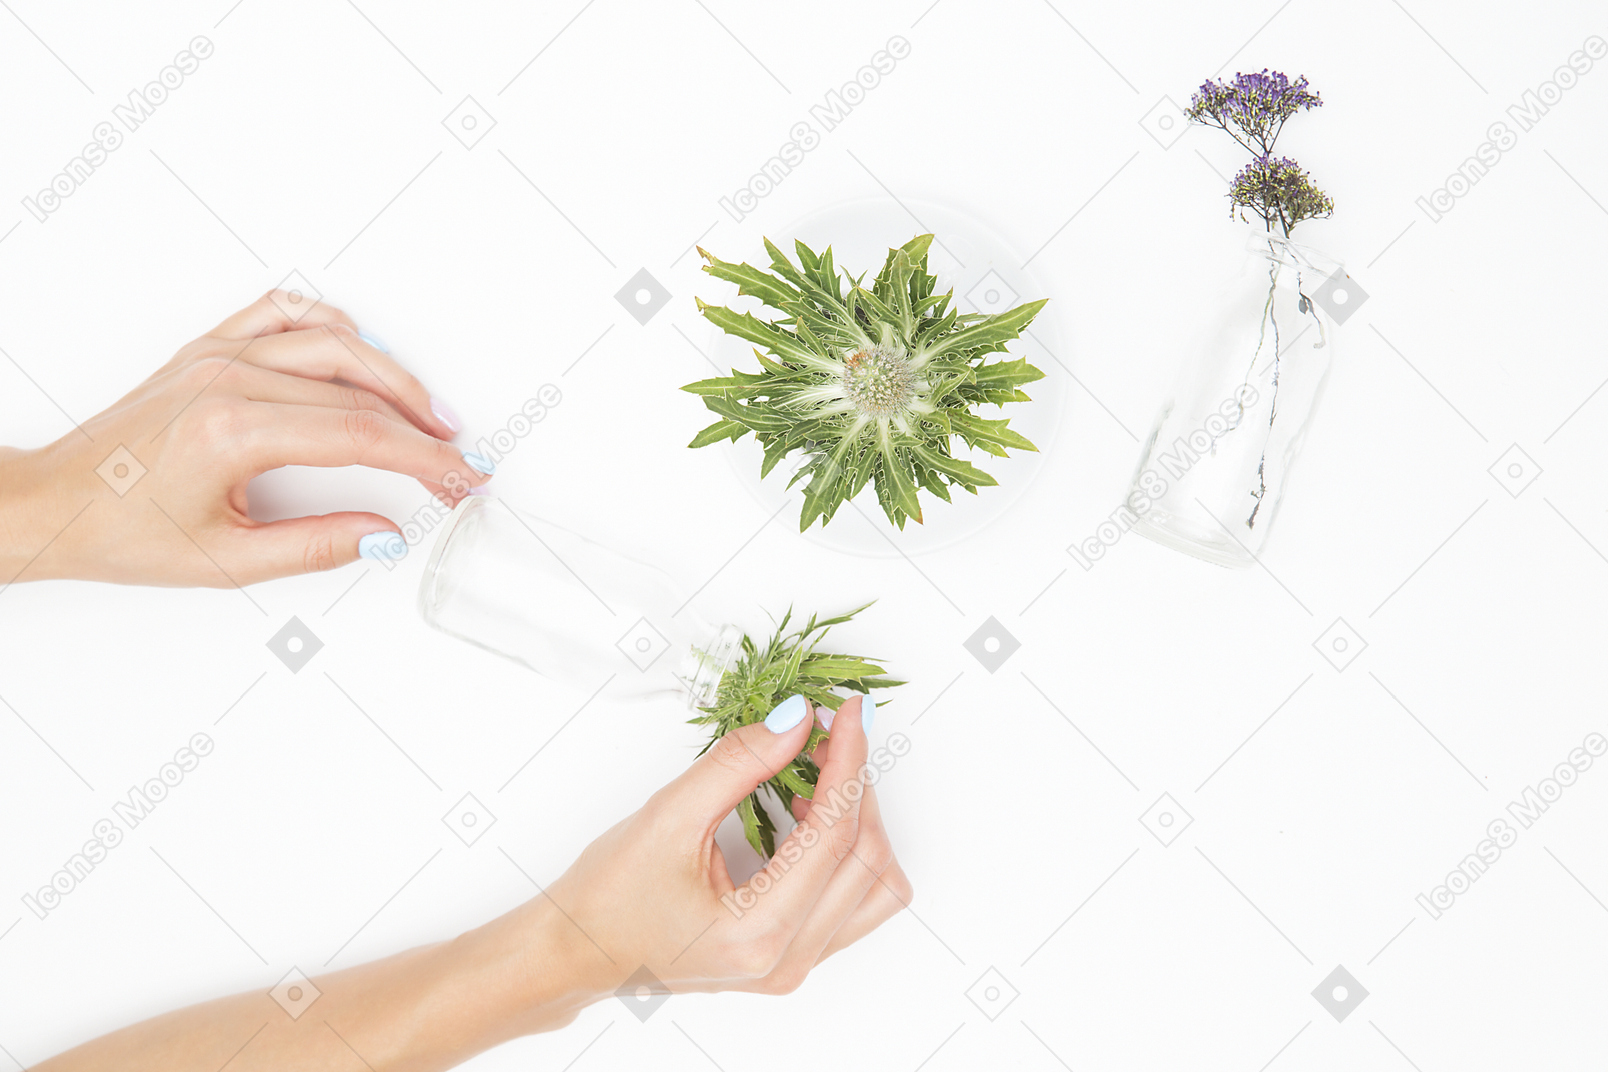 さまざまなガラスのオブジェクトと緑の植物の横にある女性の手